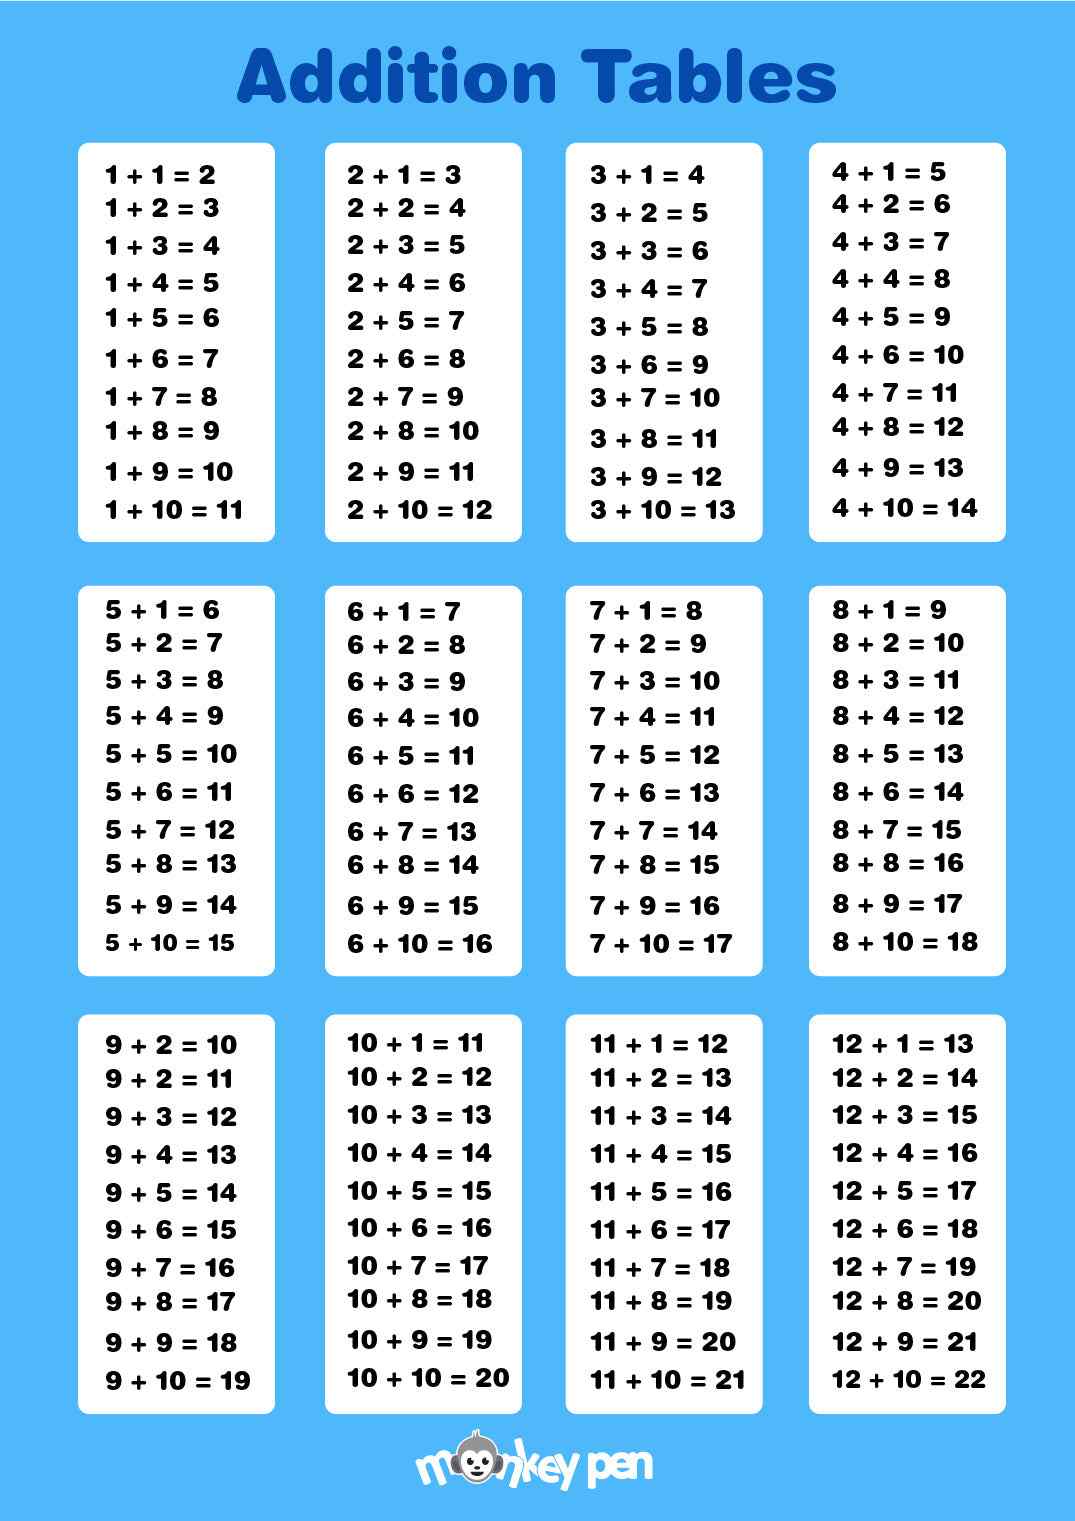 Таблица сложения в пределах 20 - распечатать